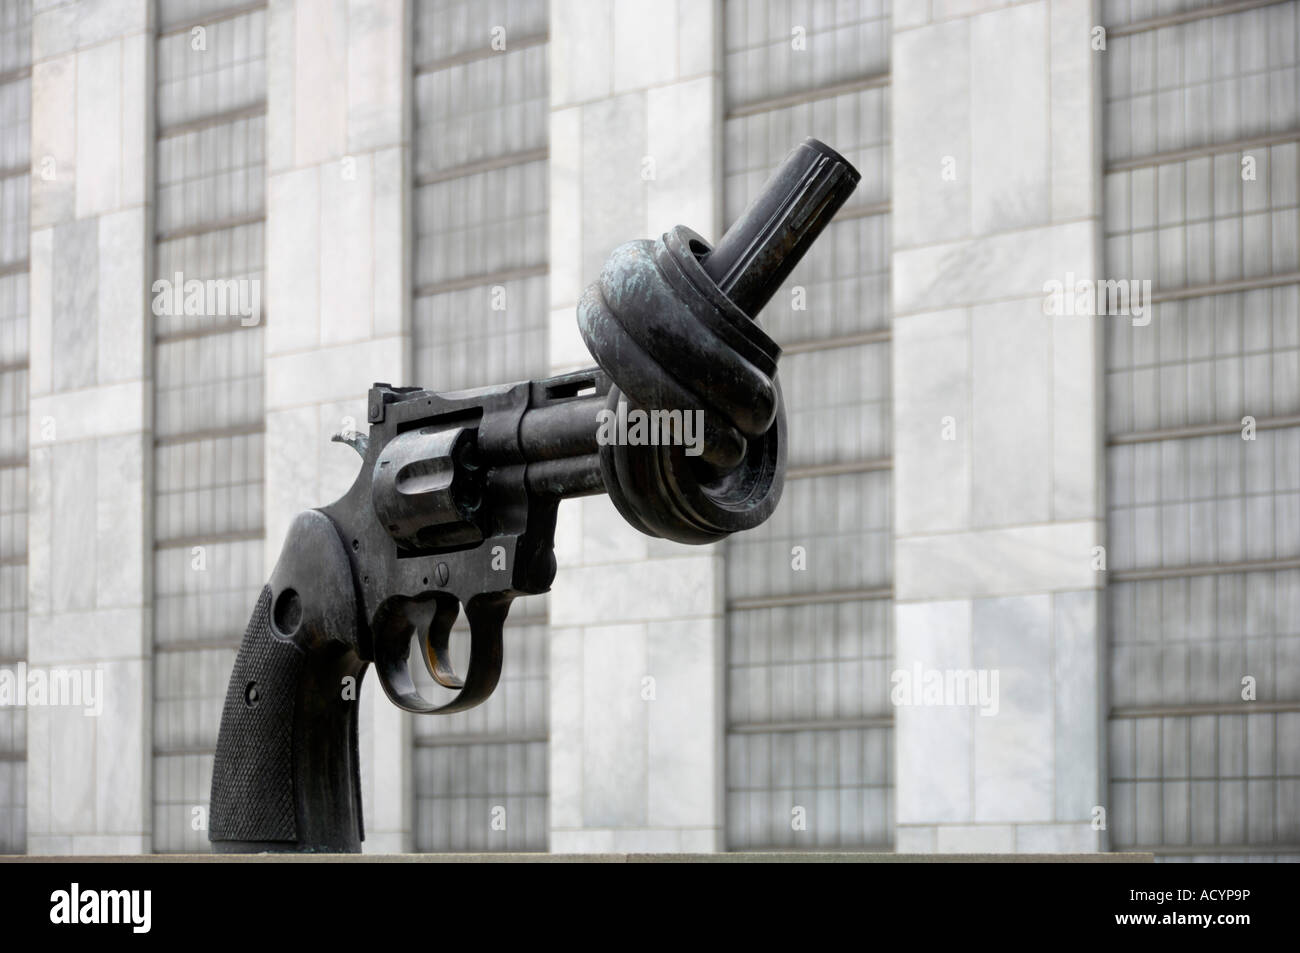 Escultura simbólica en las Naciones Unidas de Nueva York, EE.UU. Foto de stock